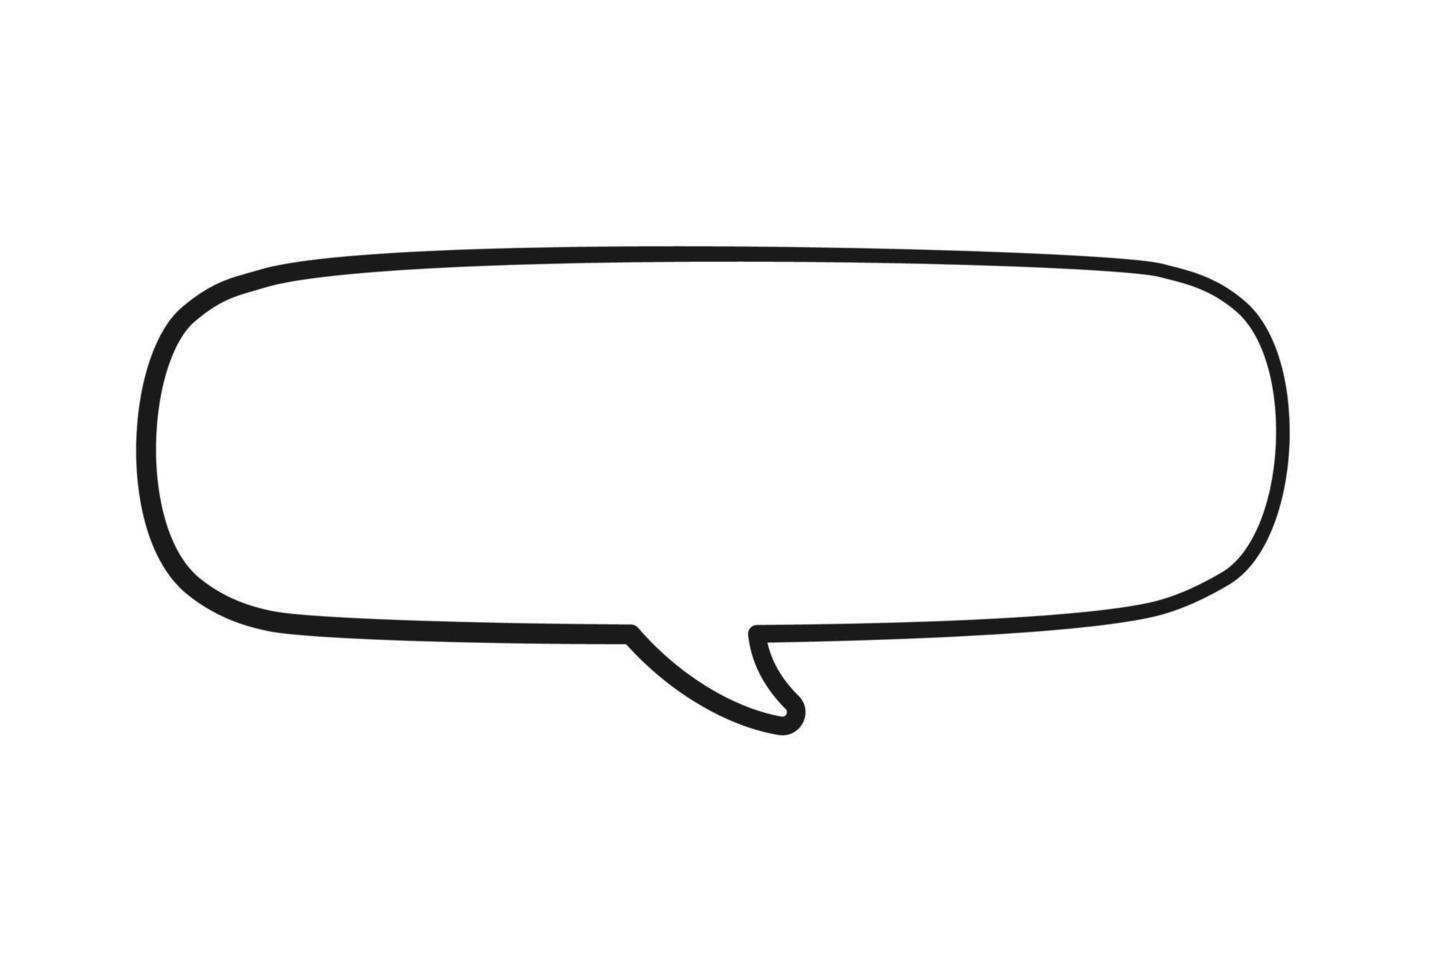 Empty speech bubbles text box. Comic speech bubble doodle outline. Vector illustration.